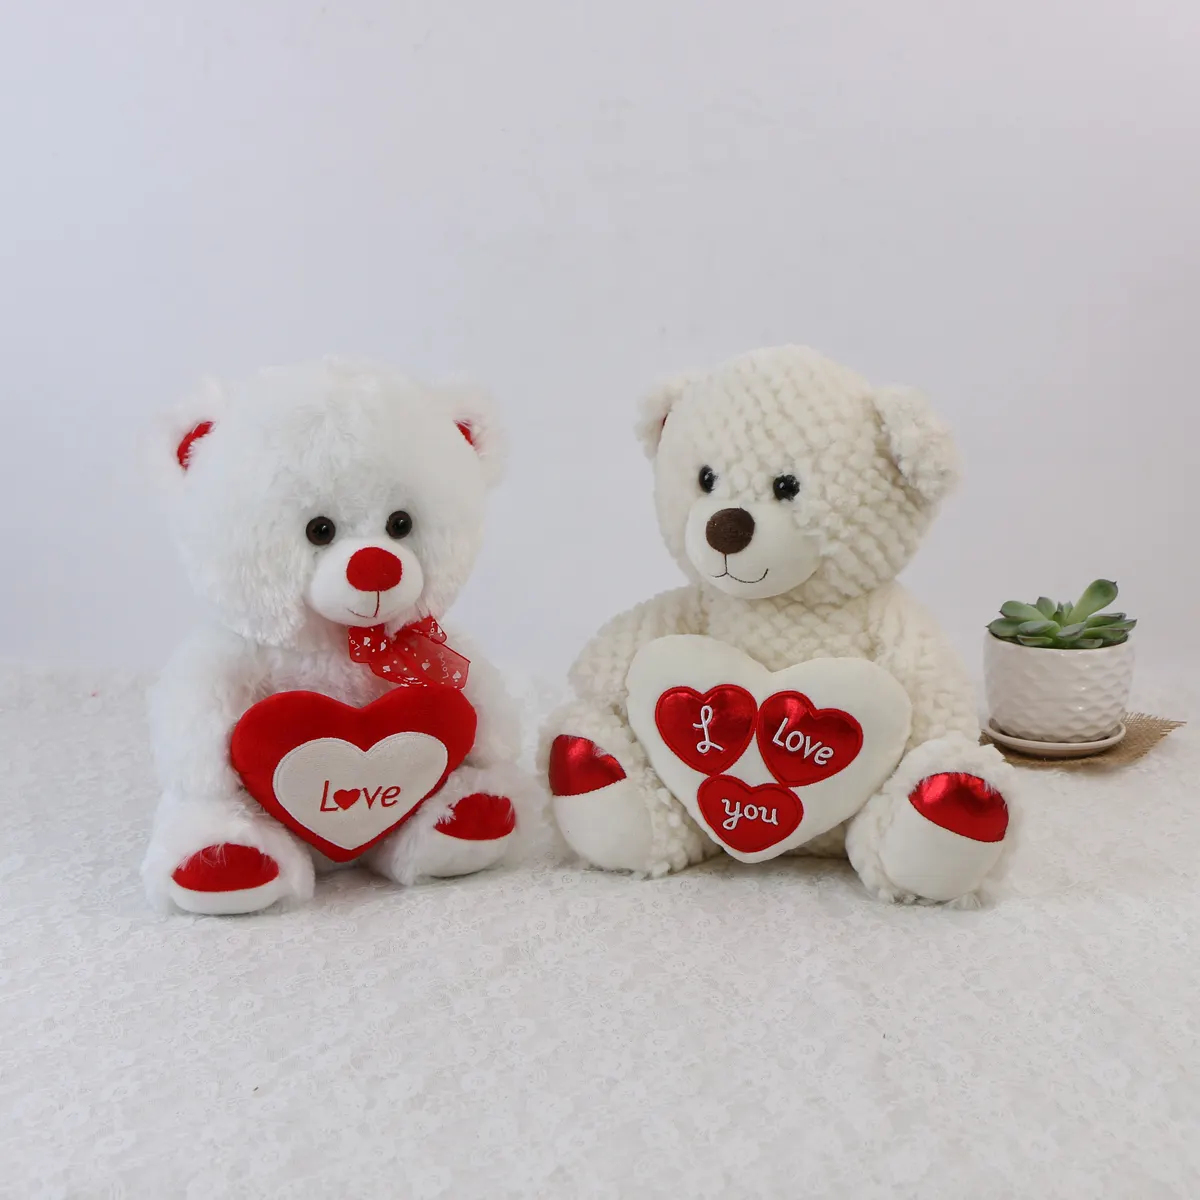 هدية عيد الحب أفخم الحيوانات المحشوة دمية دب لعب تصميم مجاني مخصص دمية مخصصة تصنيع الحيوانات